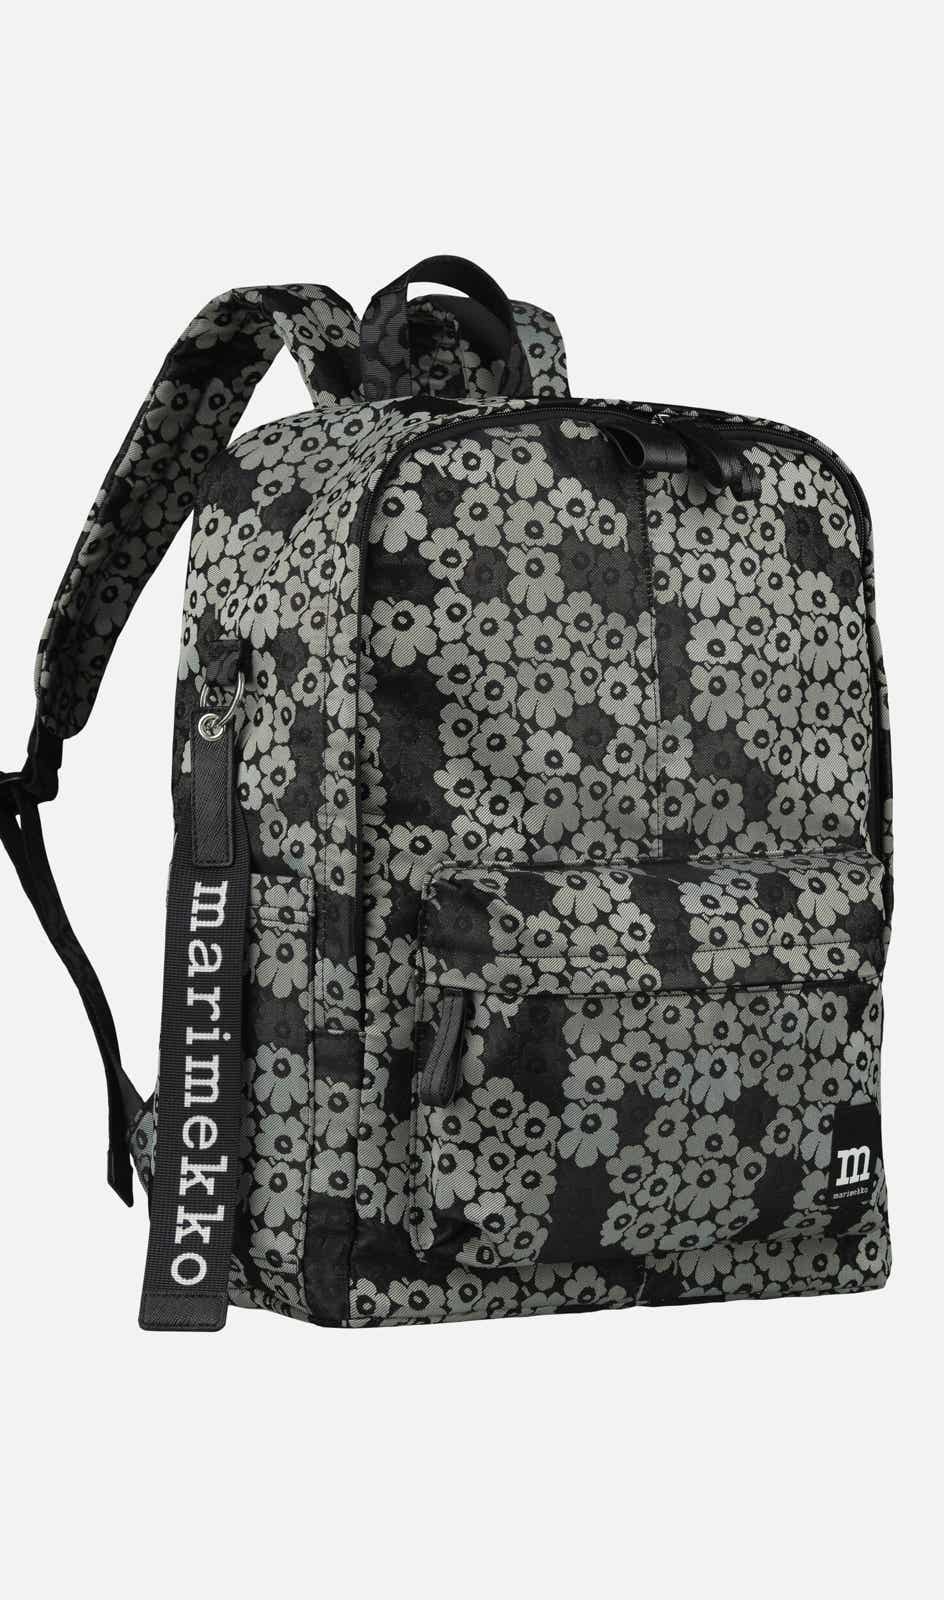 Zip Top Backpack Unikko